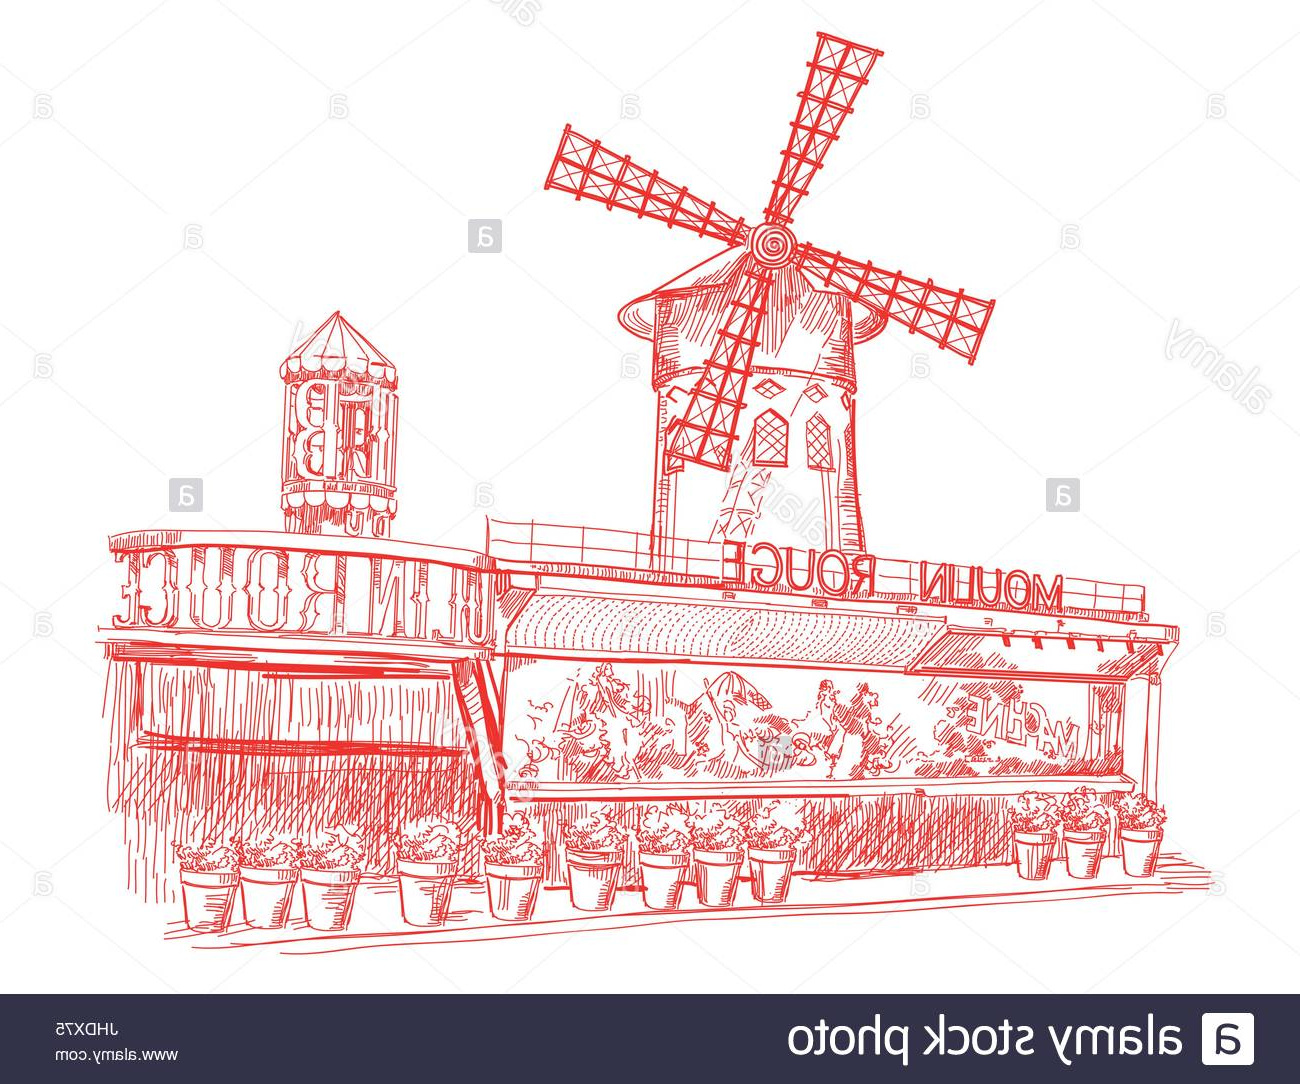 photo image moulin rouge monument de paris france vector illustration dessin main isole en couleur rouge sur fond blanc